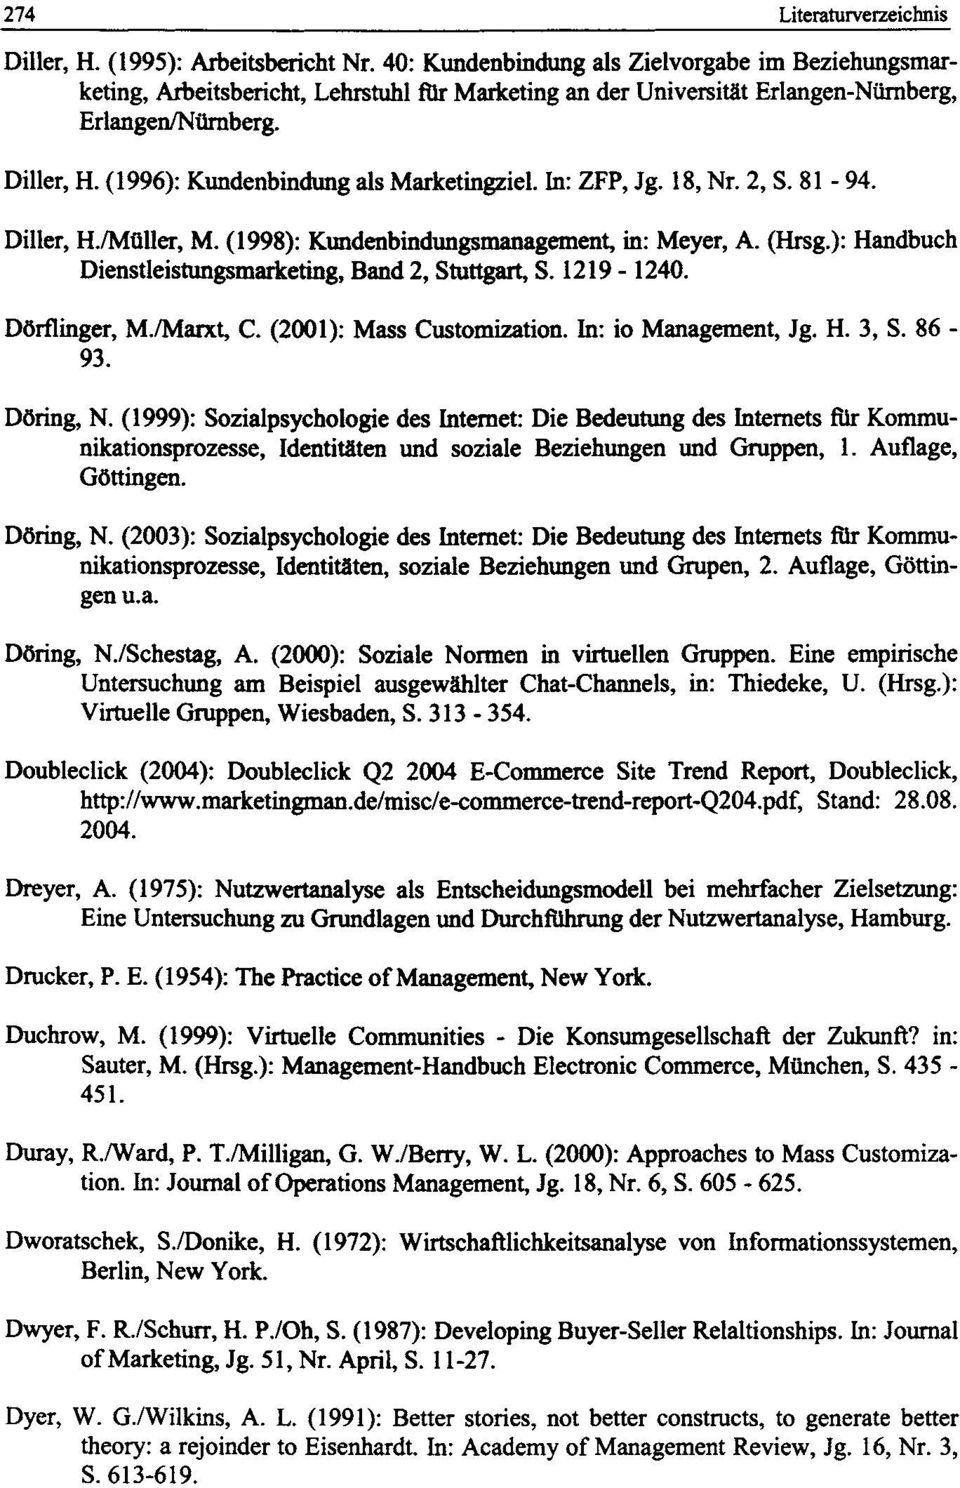 (1996): Kundenbindung als Marketingziel. In: ZFP, Jg. 18, Nr. 2, S. 81-94. Diller, H./Mtiller, M. (1998): Kundenbindungsmanagement, in: Meyer, A. (Hrsg.